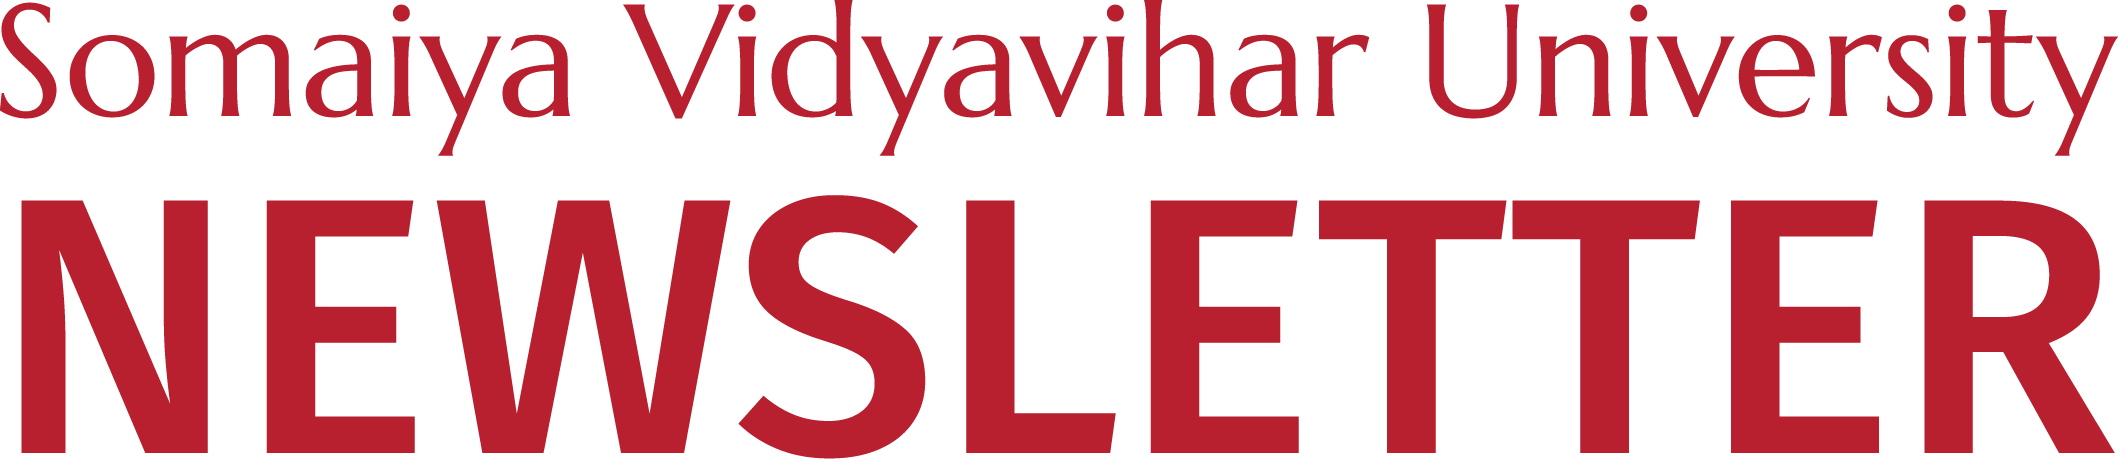 Somaiya Vidyavihar University Newsletter